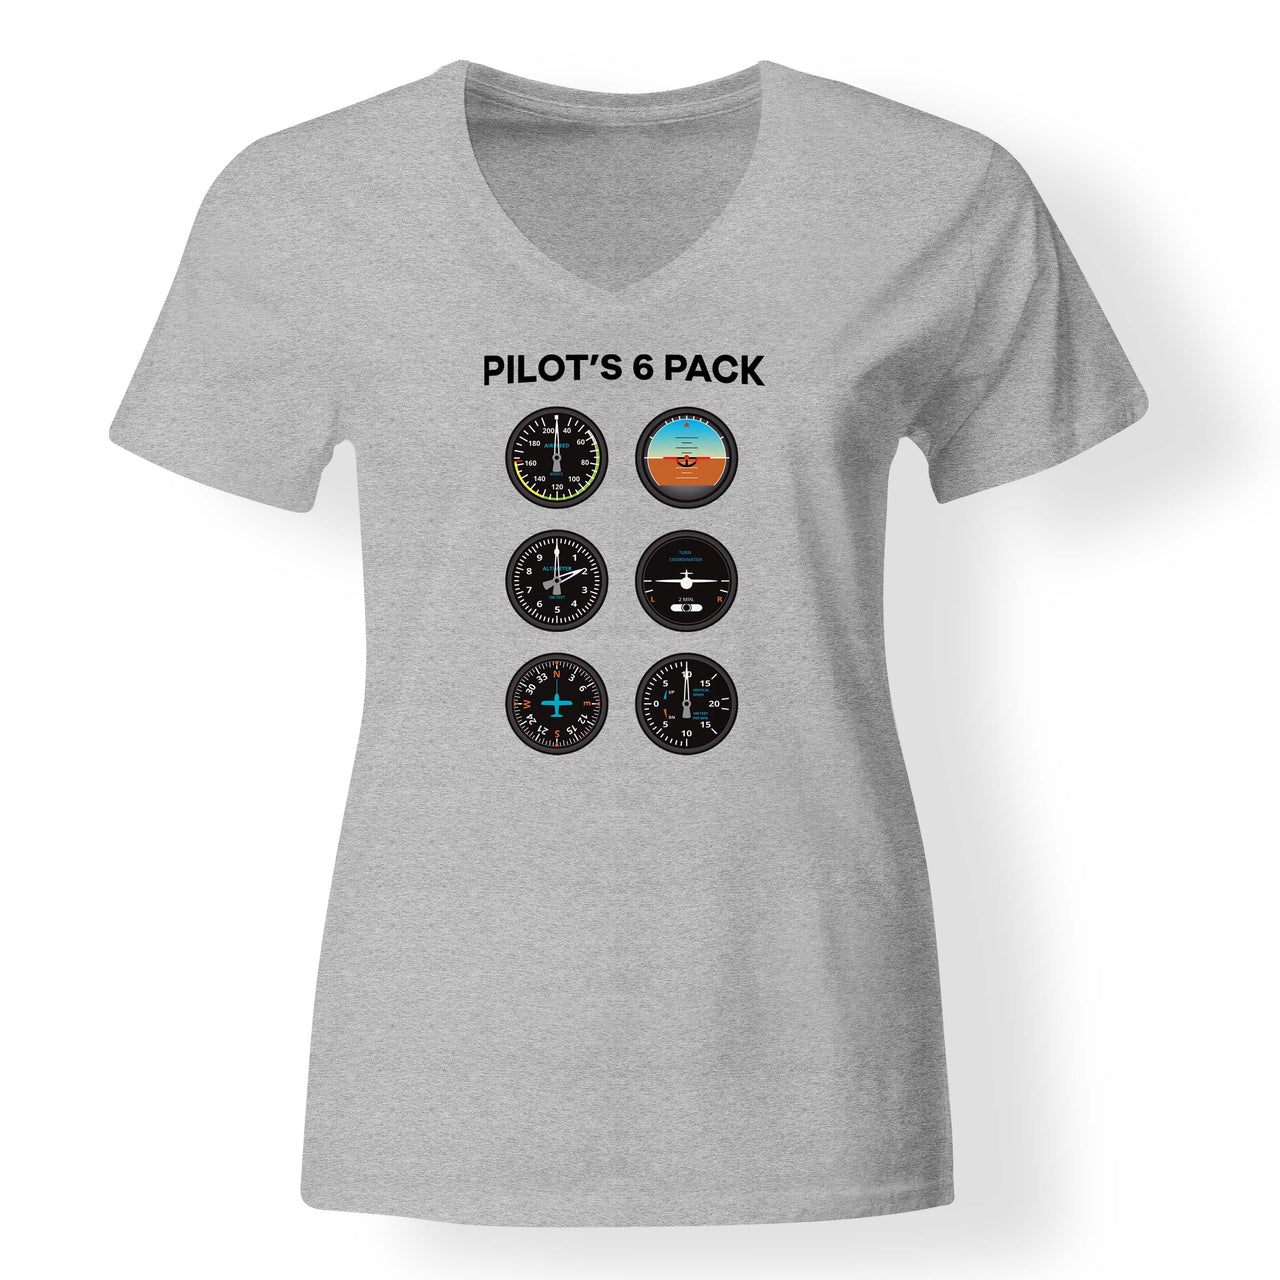 Pilot's 6 Pack Designed V-Neck T-Shirts